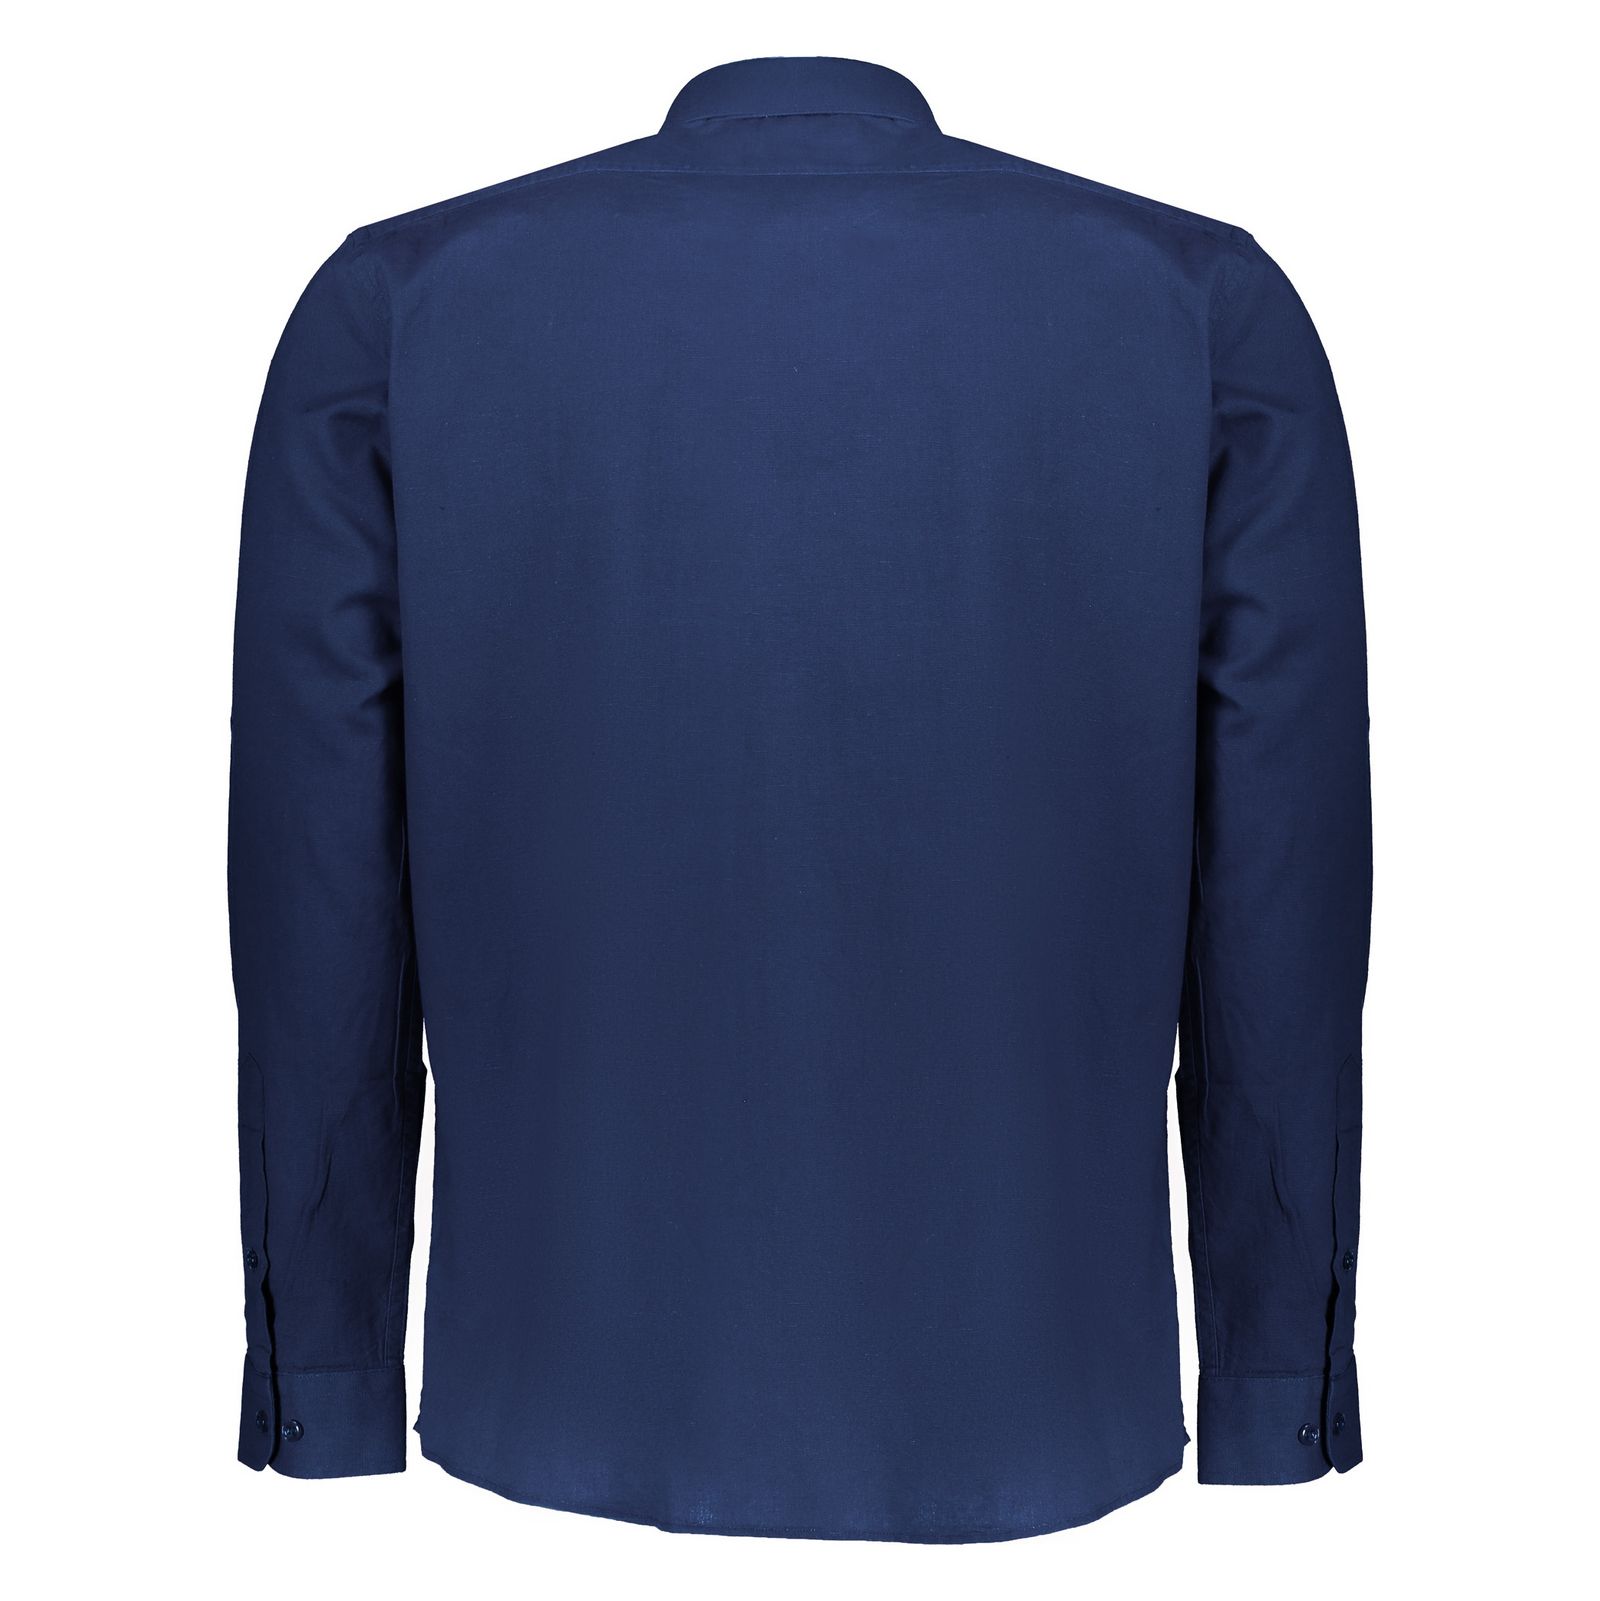 پیراهن مردانه لرد آرچر مدل 200114756 - آبی - 4